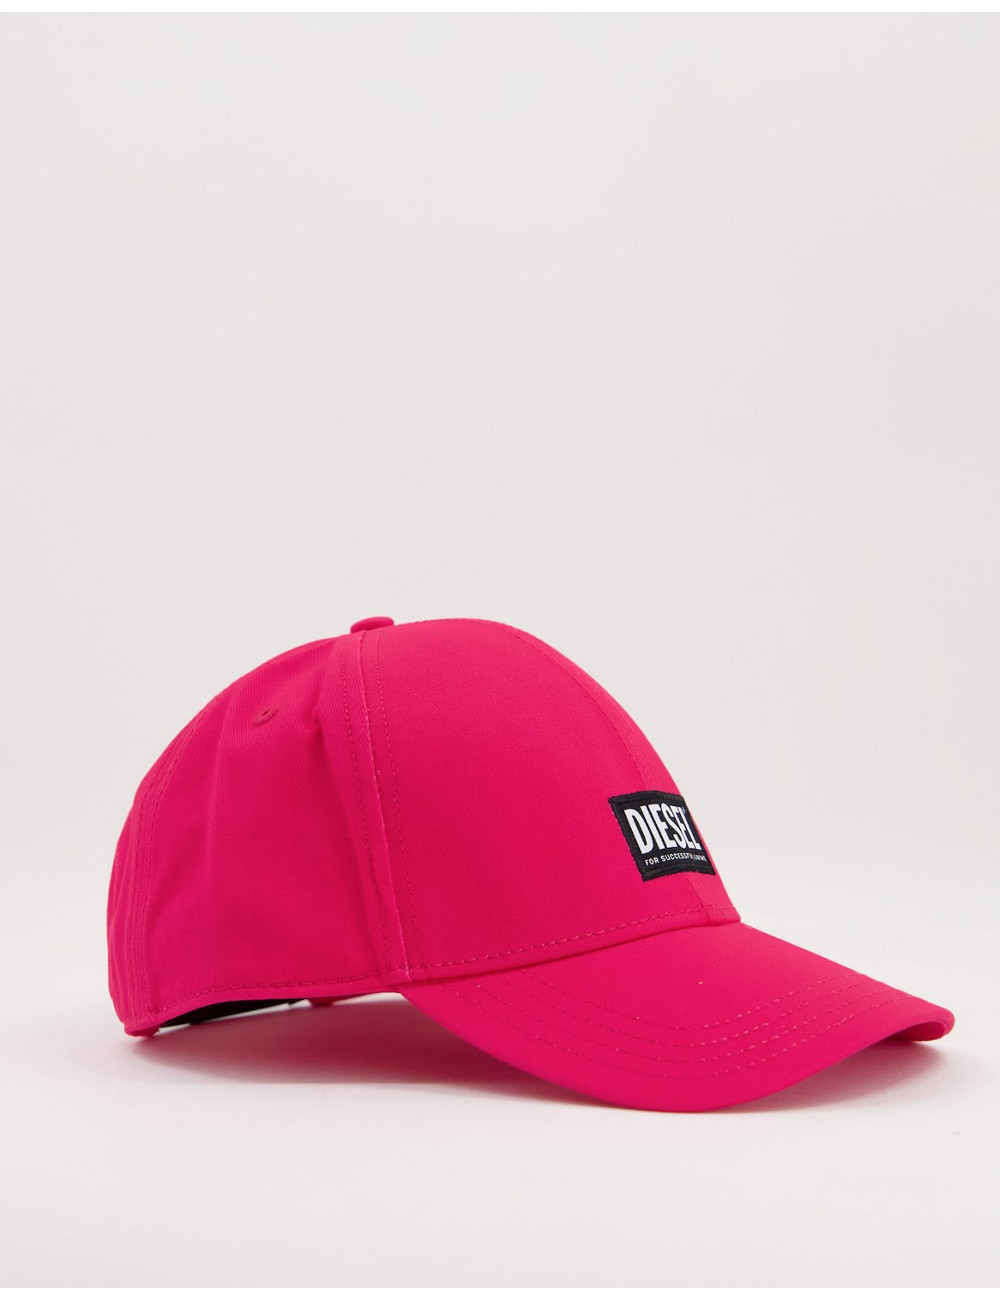 Diesel core logo cap in pink